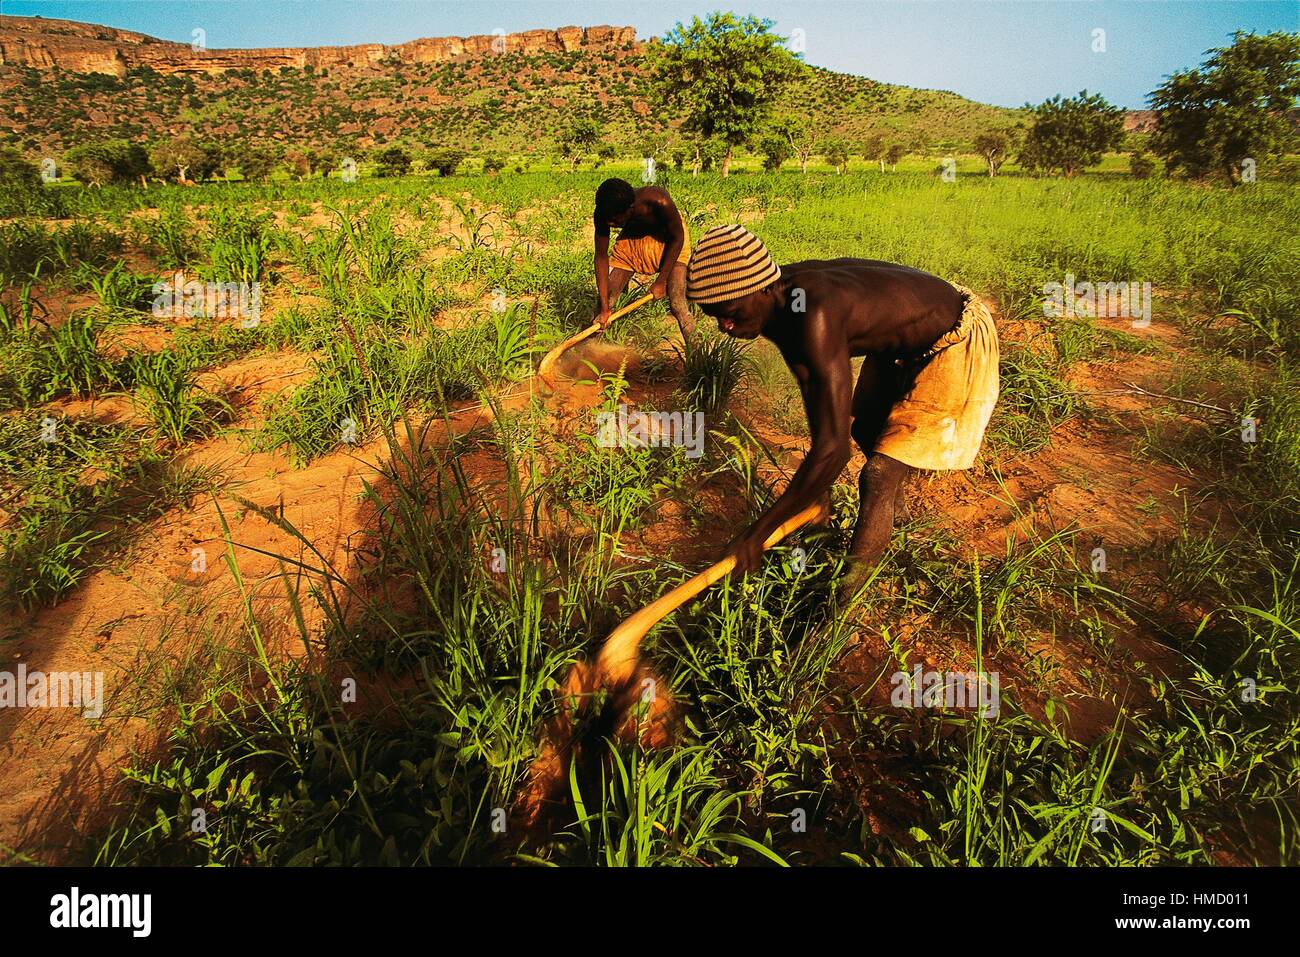 Gli agricoltori Dogon zappando un campo con la scarpata Bandiagara in background, Mali. Foto Stock